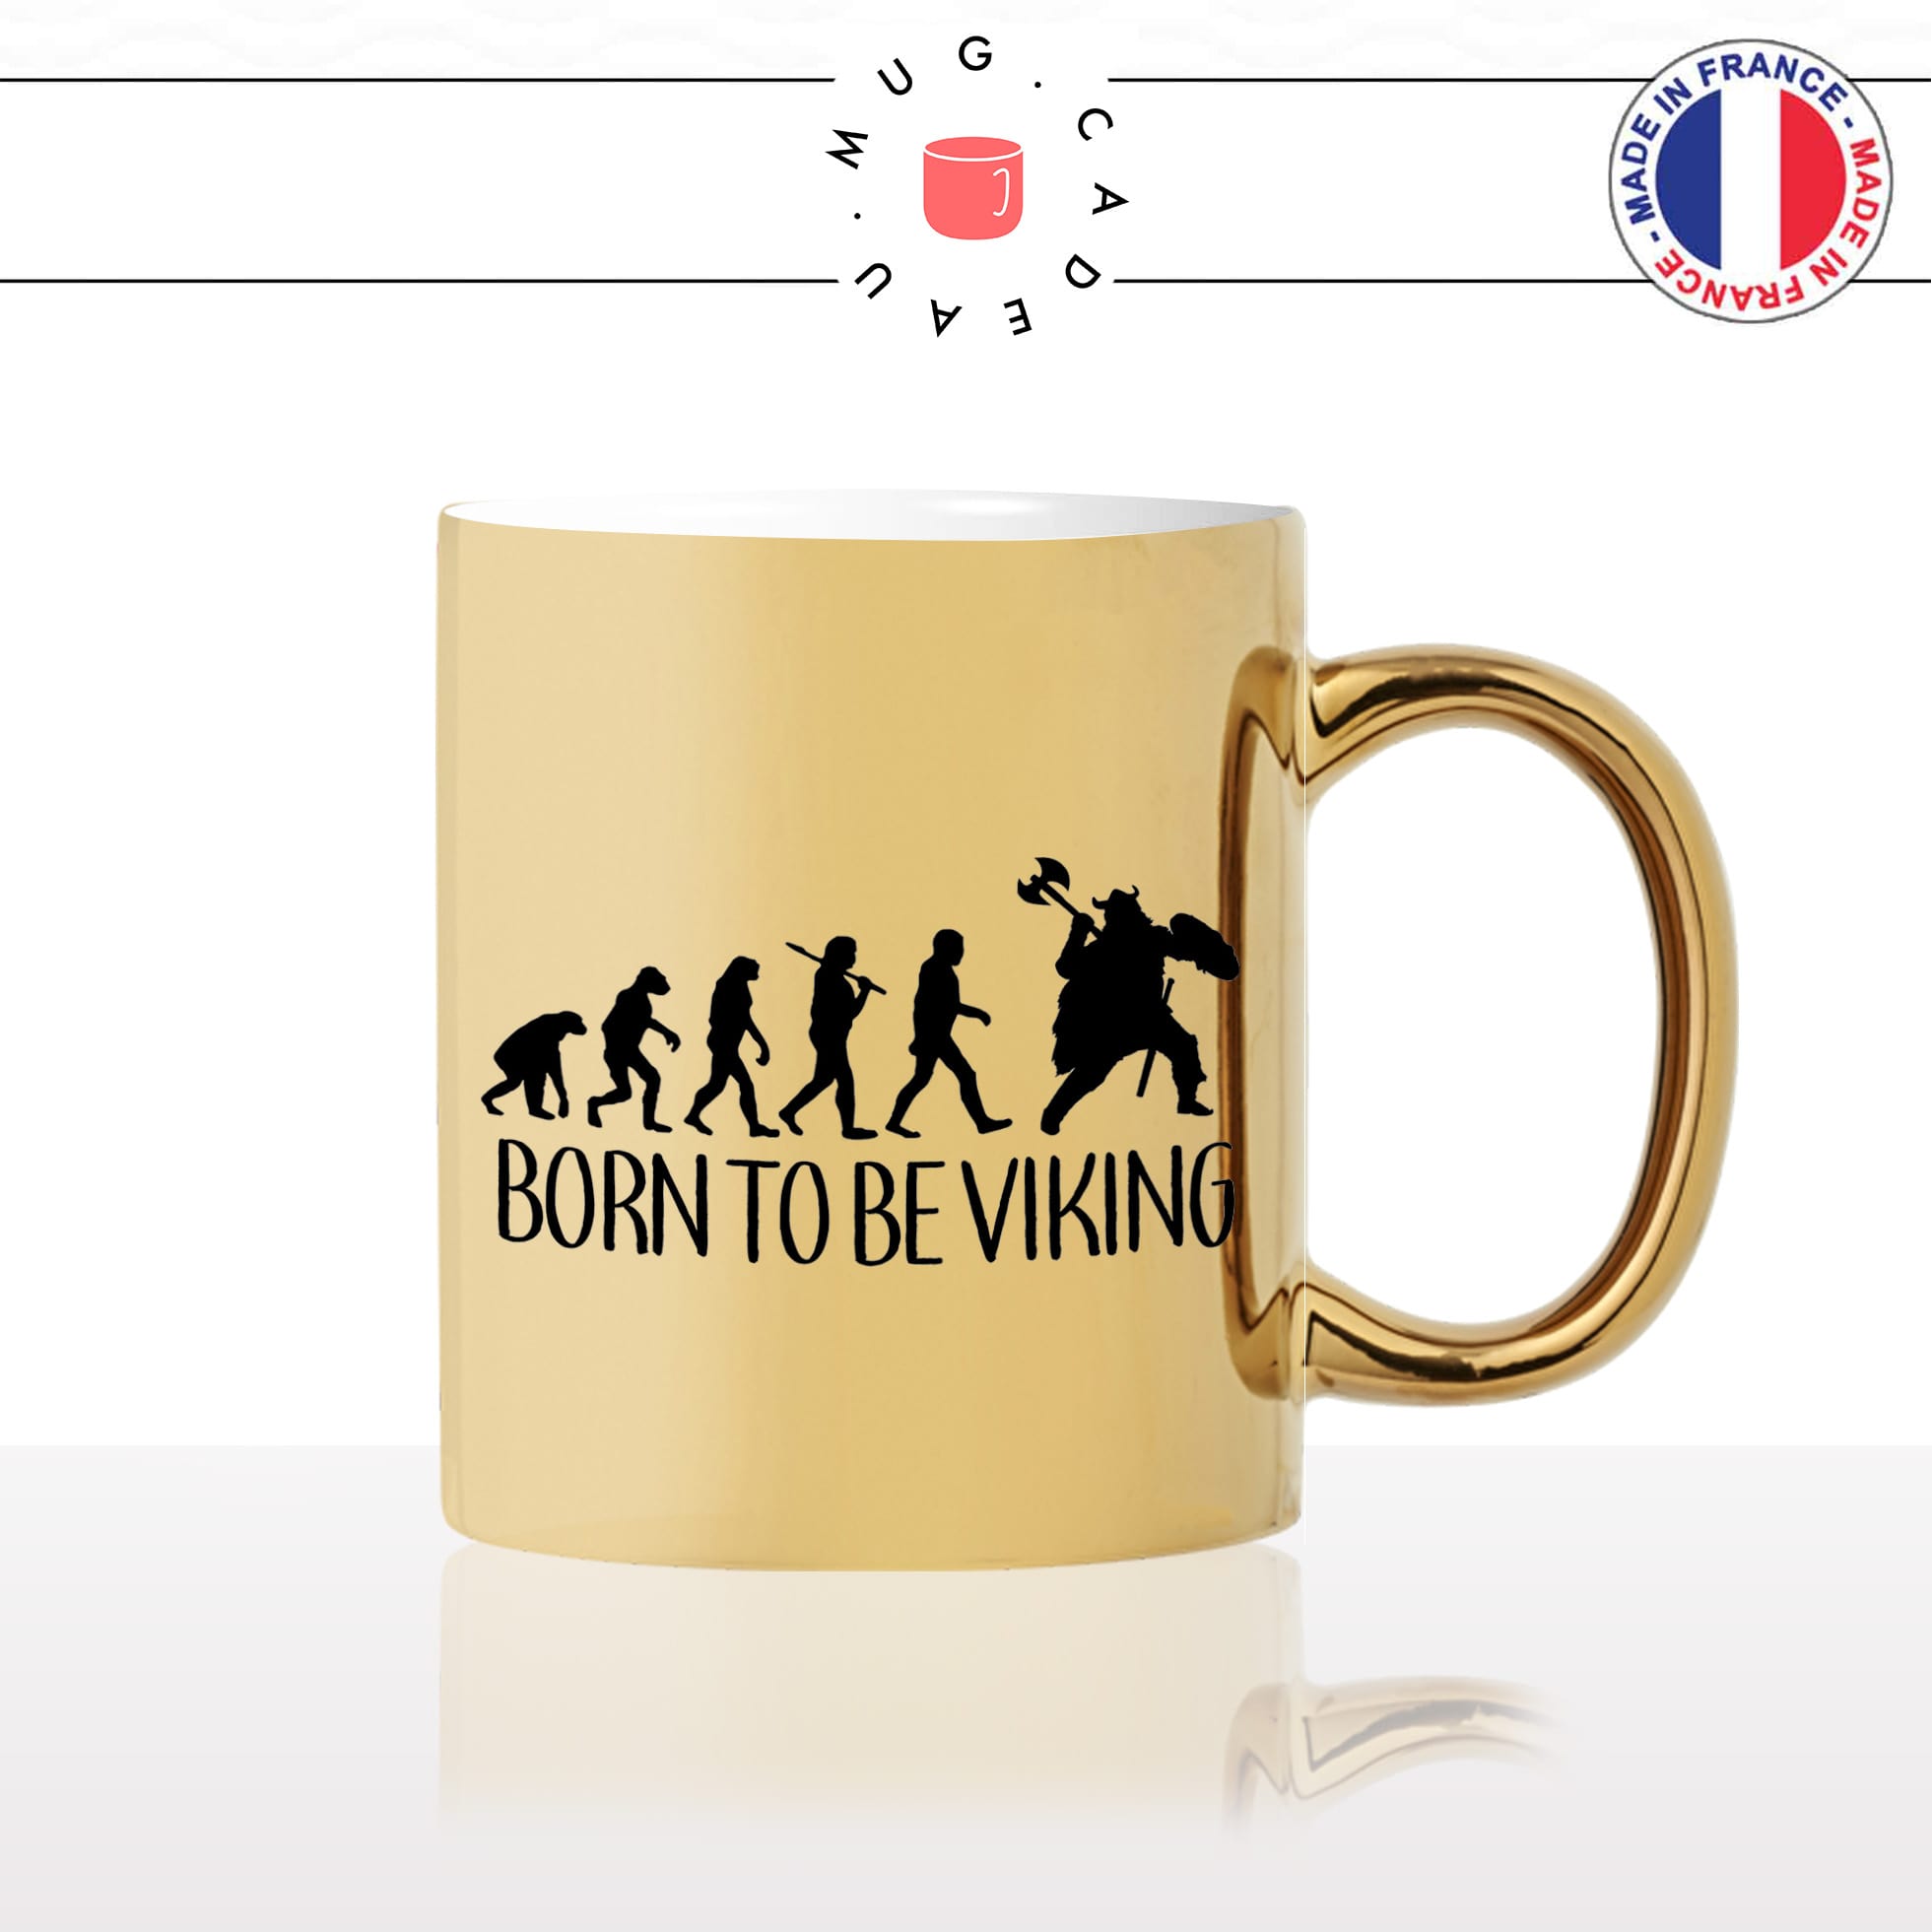 mug-tasse-or-doré-gold-born-to-be-viking-normand-evolution-humaine-homme-histoire-france-cool-idée-cadeau-fun-café-thé-personnalisé2-min